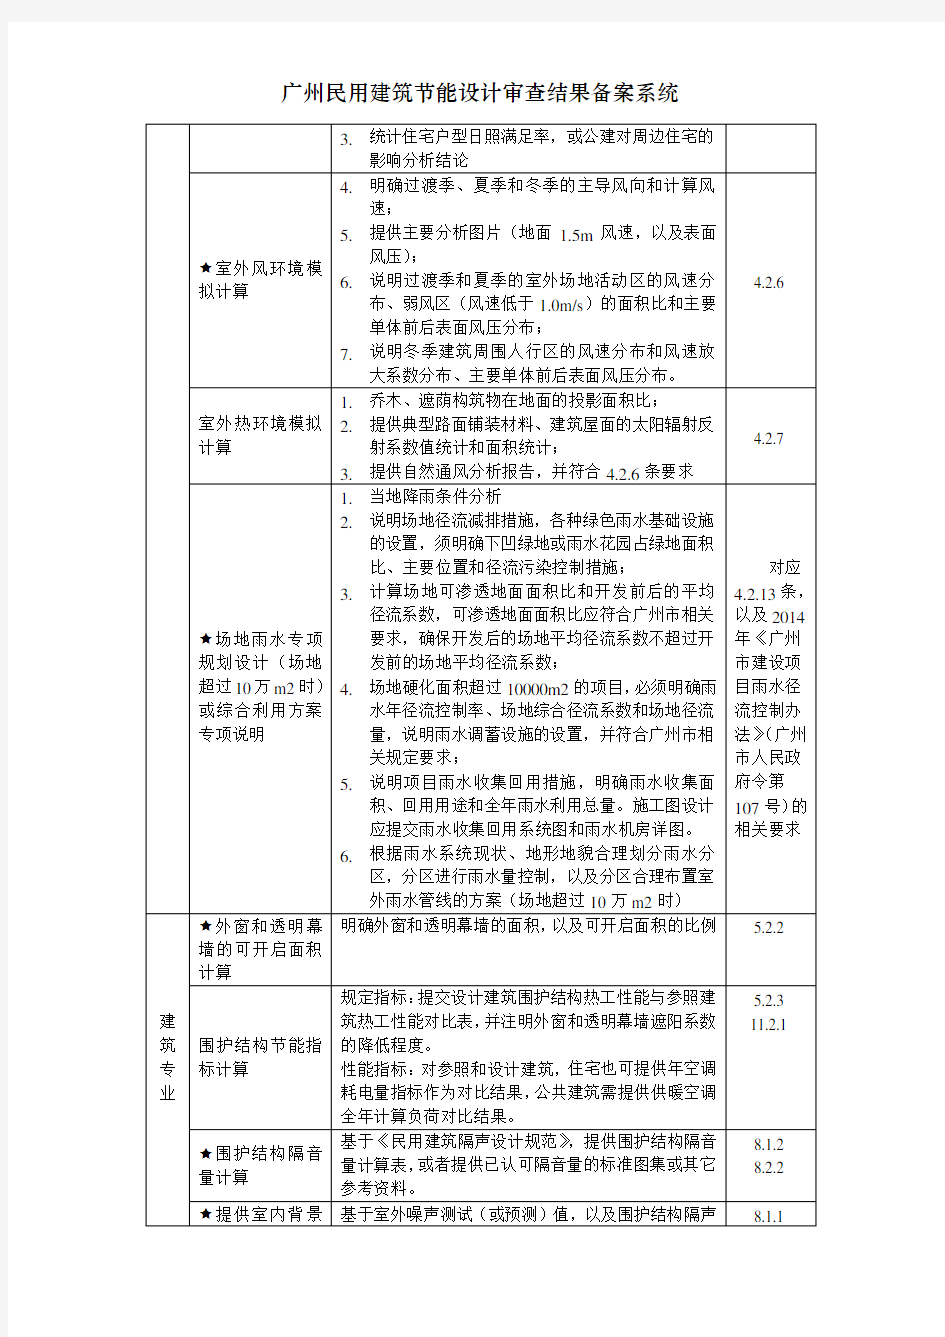 广州民用建筑节能设计审查结果备案系统